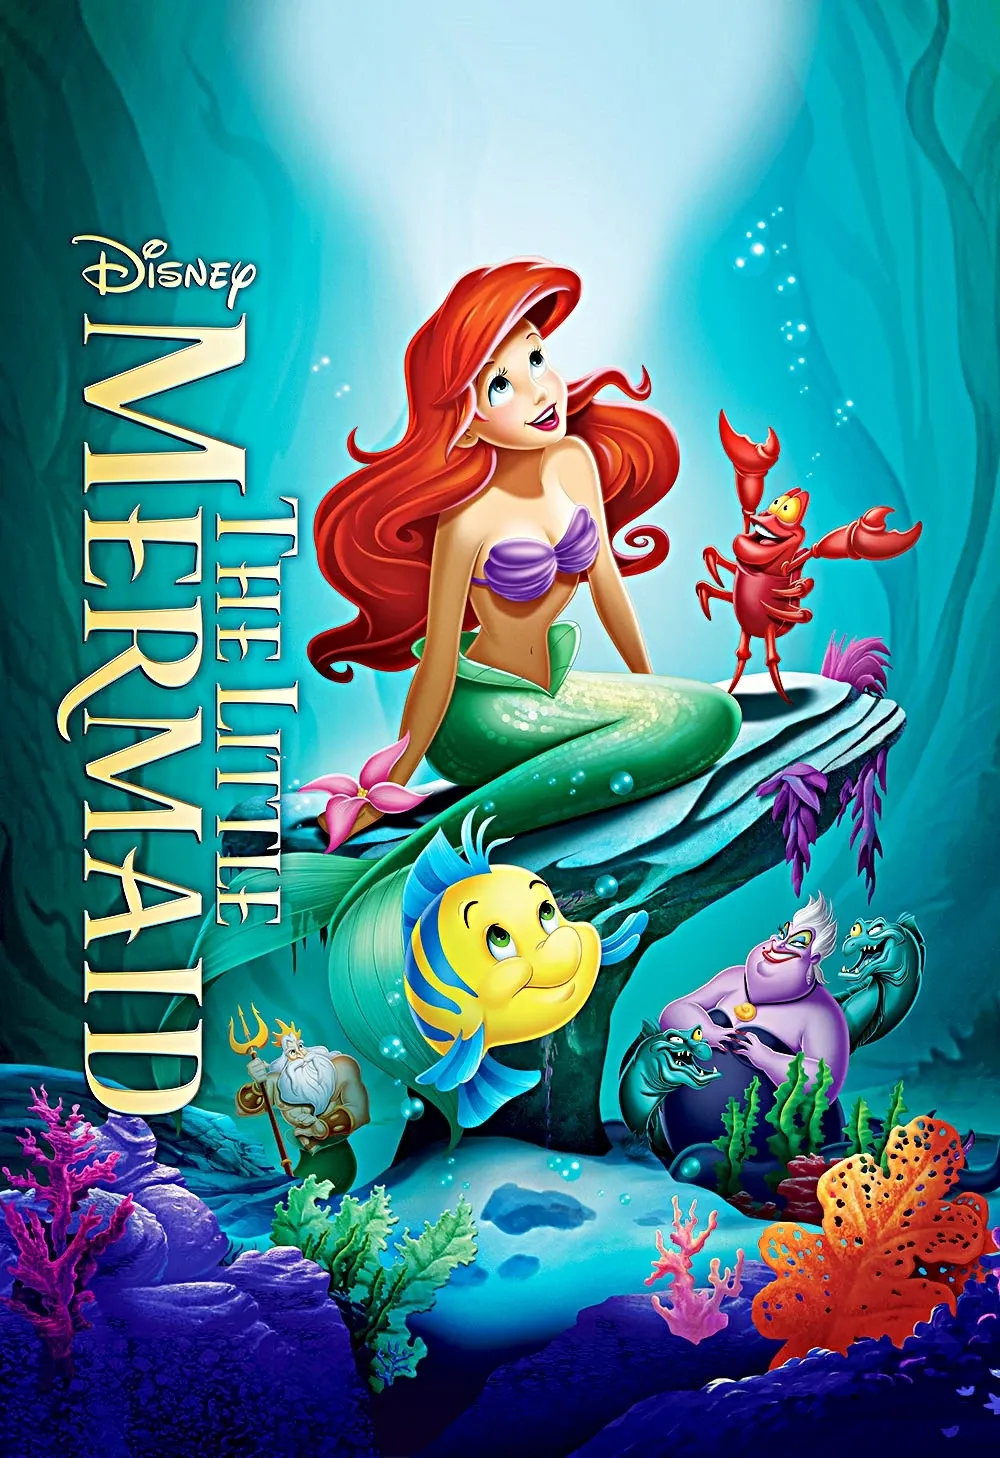 หวนคืนความมหัศจรรย์ของ The Little Mermaid (1989) - บทวิจารณ์ภาพยนตร์ย้อนหลัง